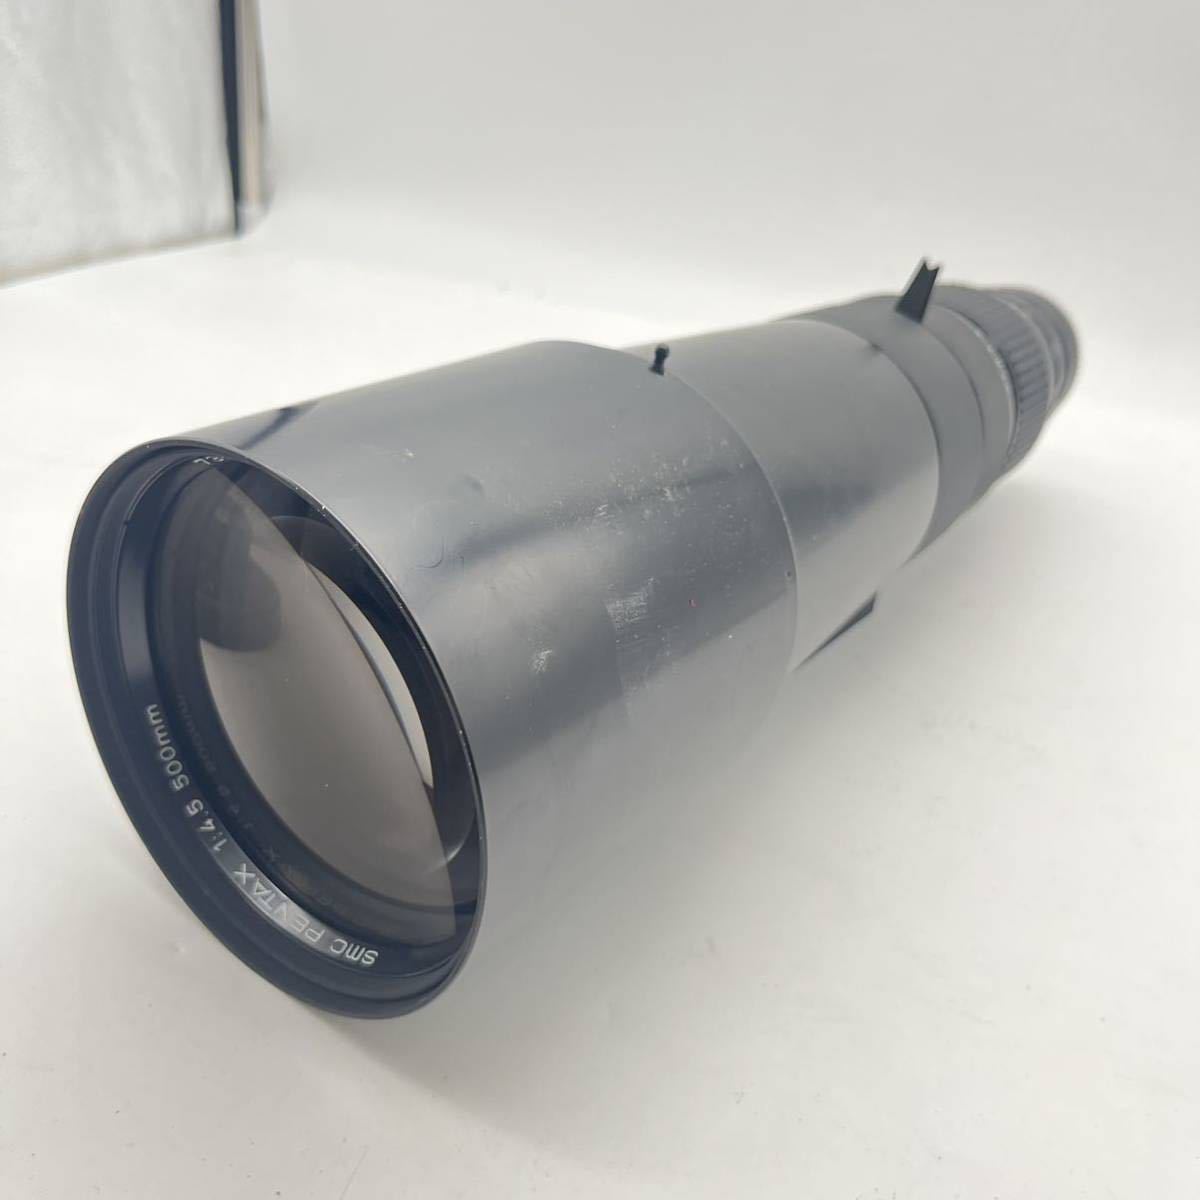 杉本 12月 No.2 レンズ PENTAX ペンタックス 1:4.5 500mm ペンタックス-K用 ブラック系 カメラレンズ ヴィンテージ ブランド_画像3